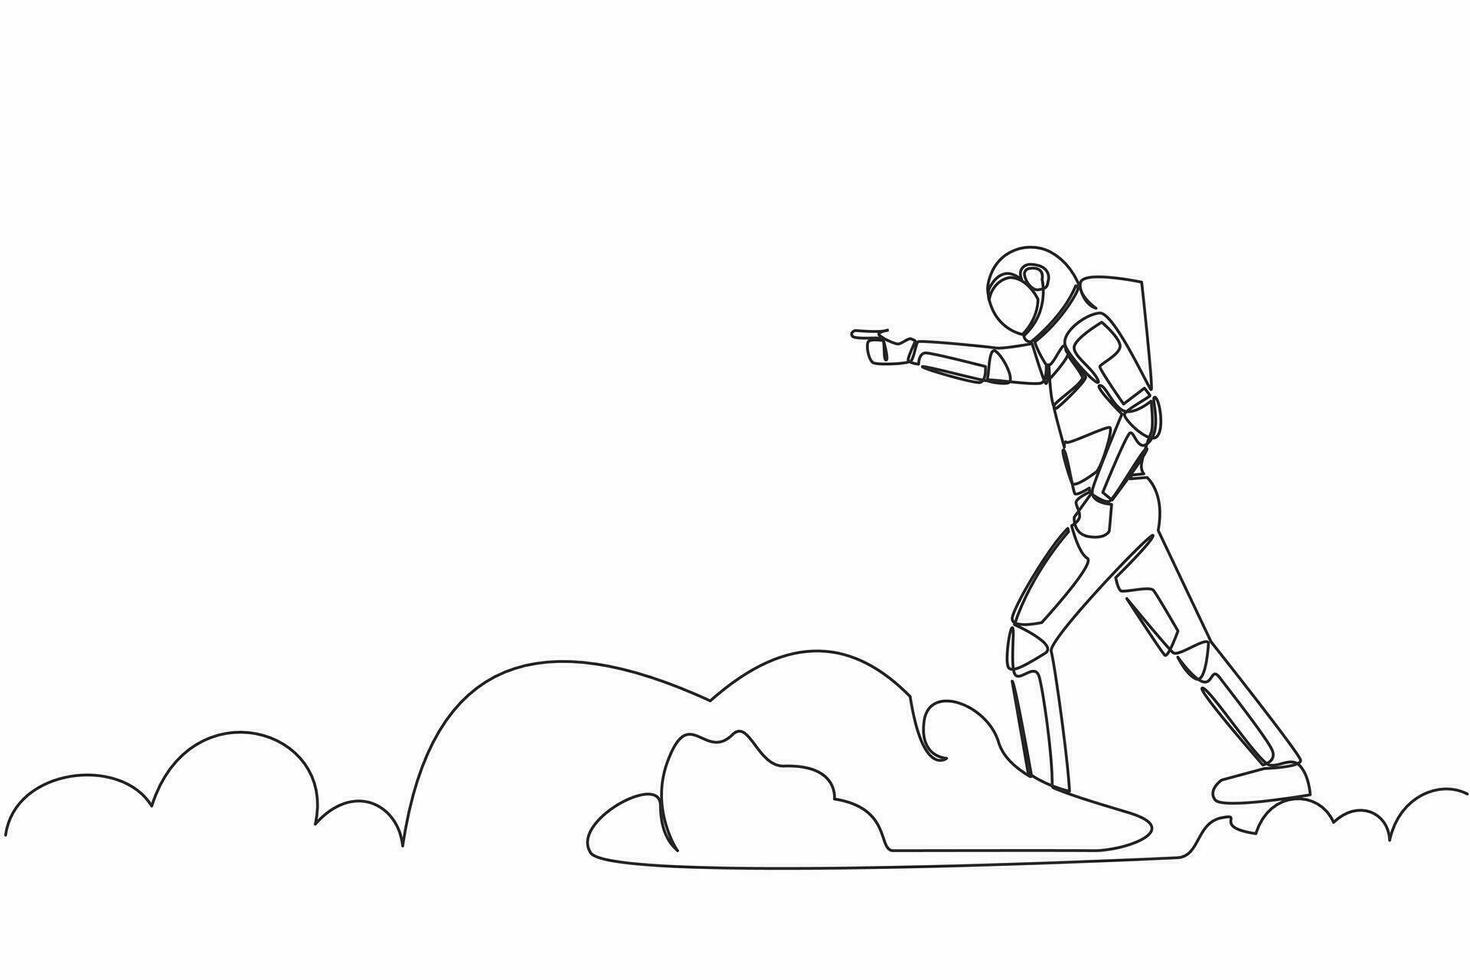 soltero uno línea dibujo joven astronauta montando nube en cielo, señalando adelante, Vamos a futuro innovación de espacio industria. cósmico galaxia espacio. continuo línea dibujar gráfico diseño vector ilustración